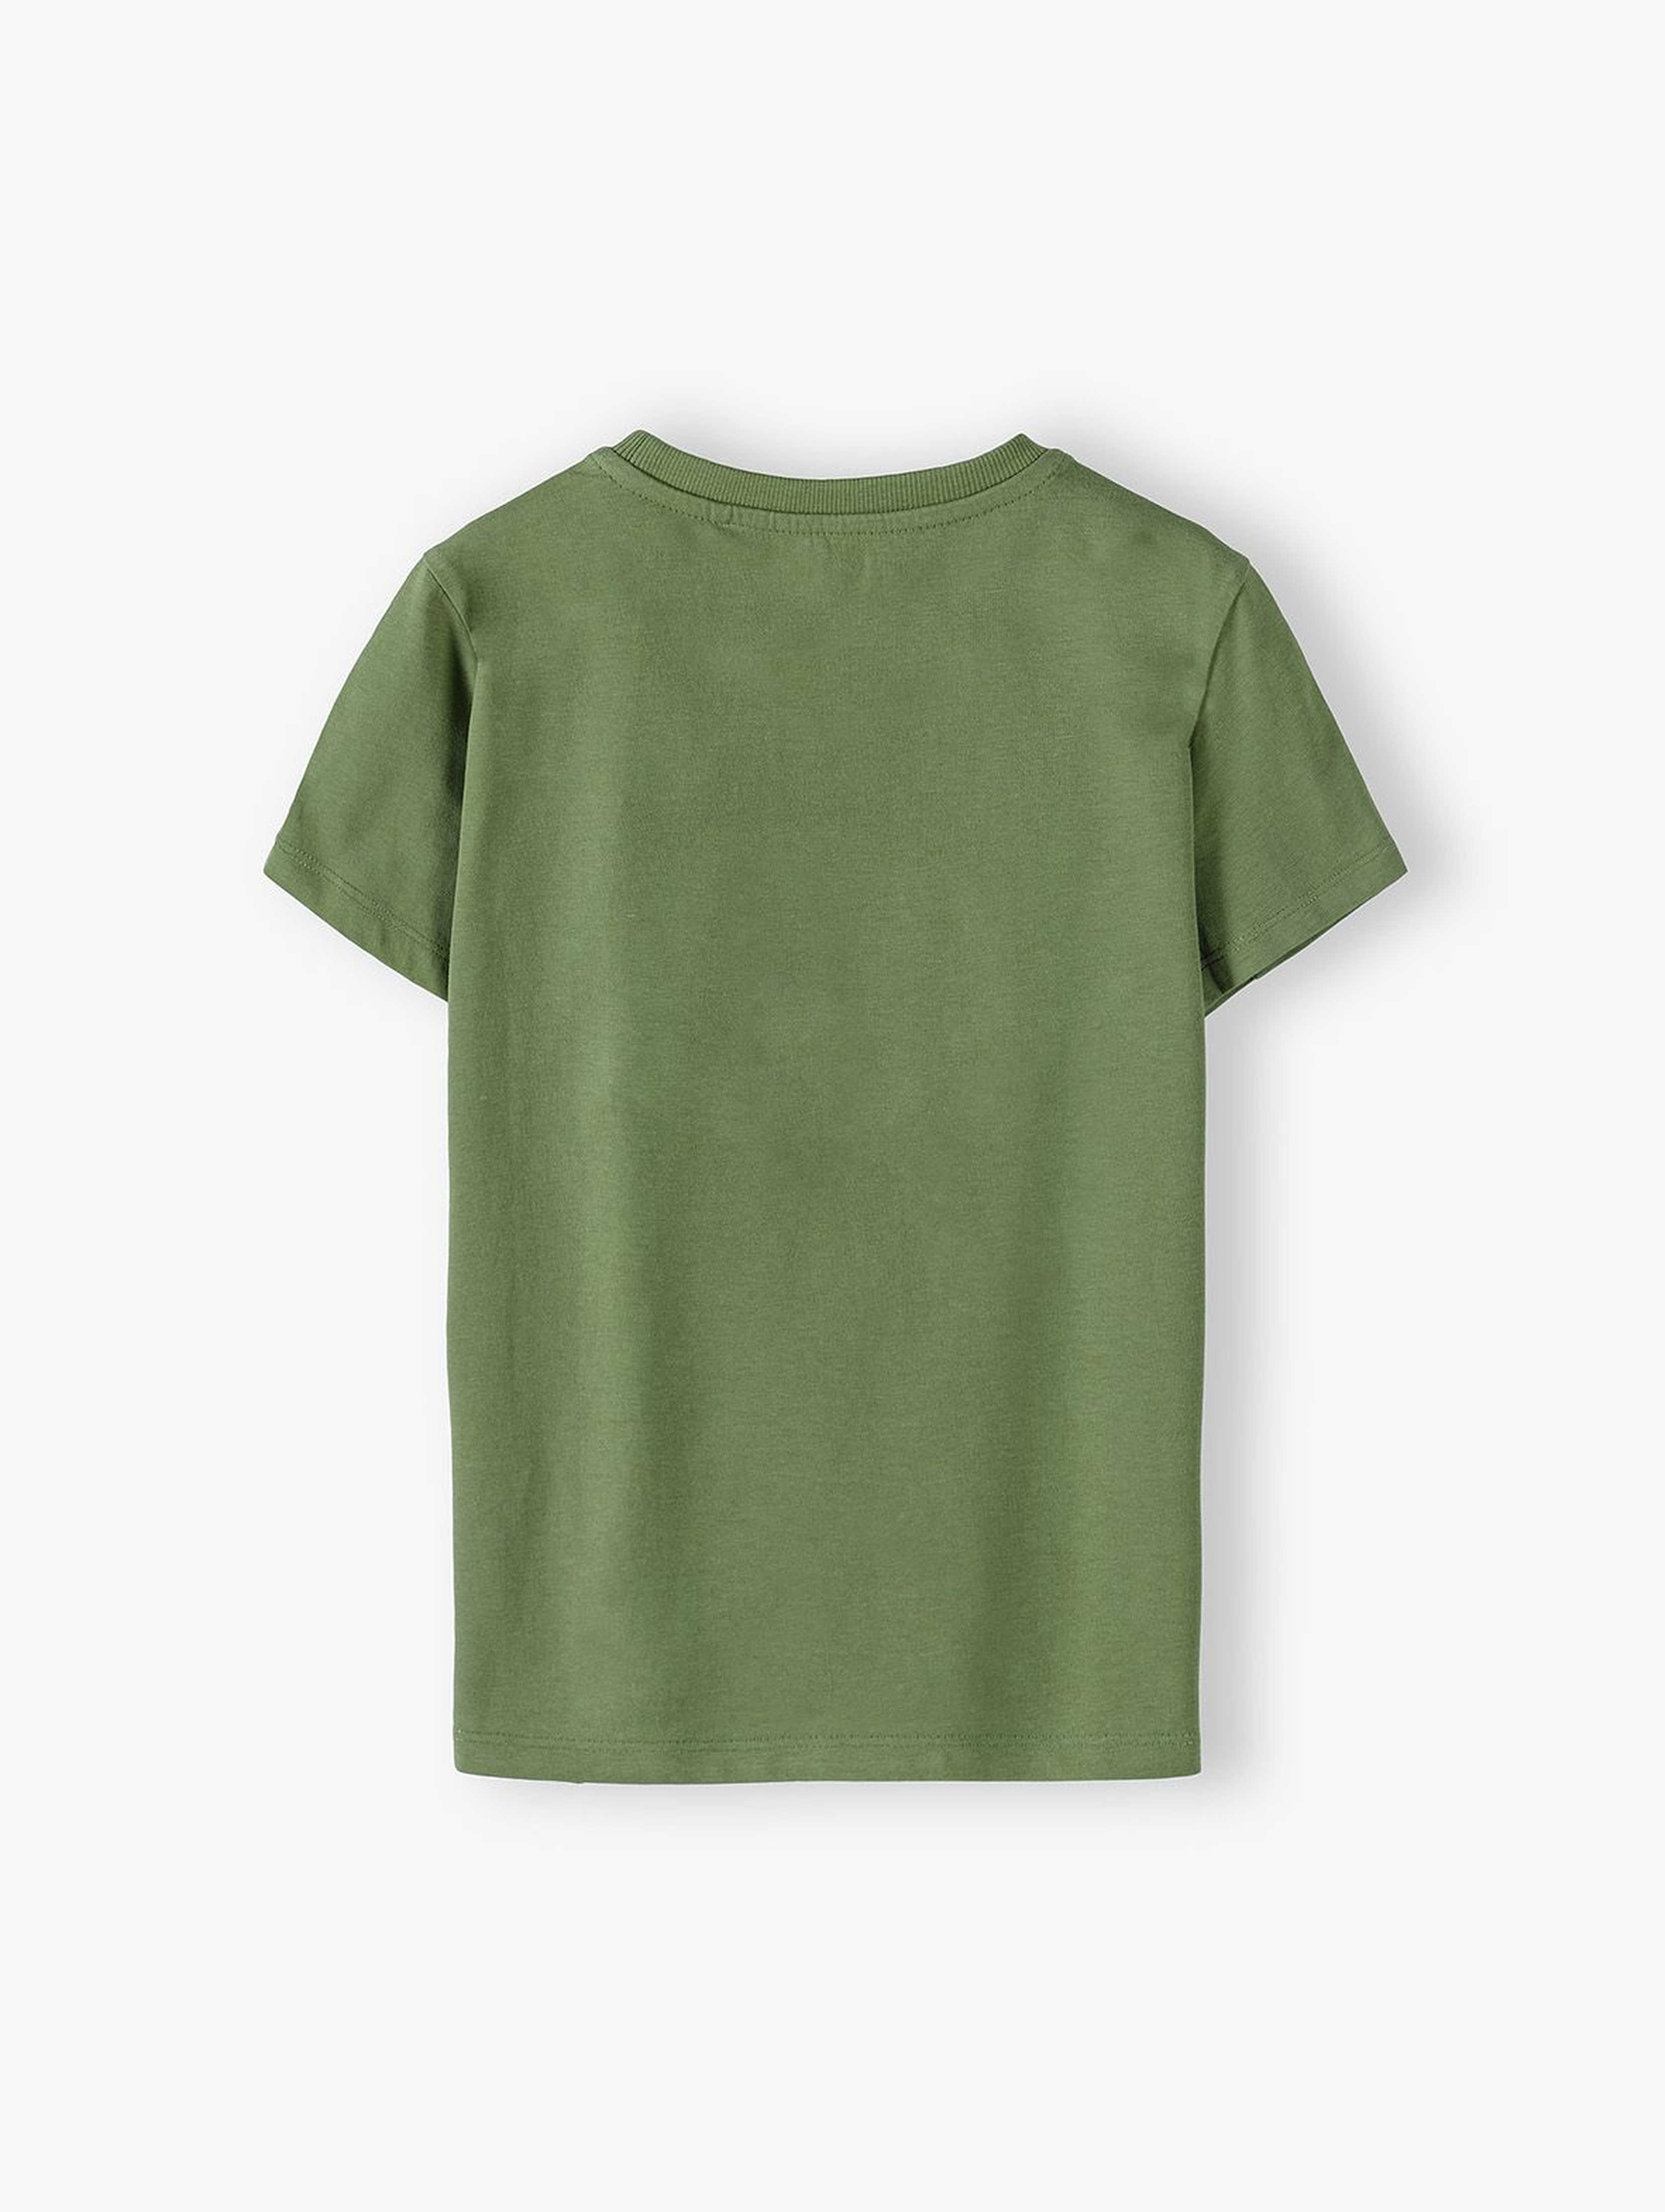 T-shirt chłopięcy bawełniany zielony z nadrukiem lisa